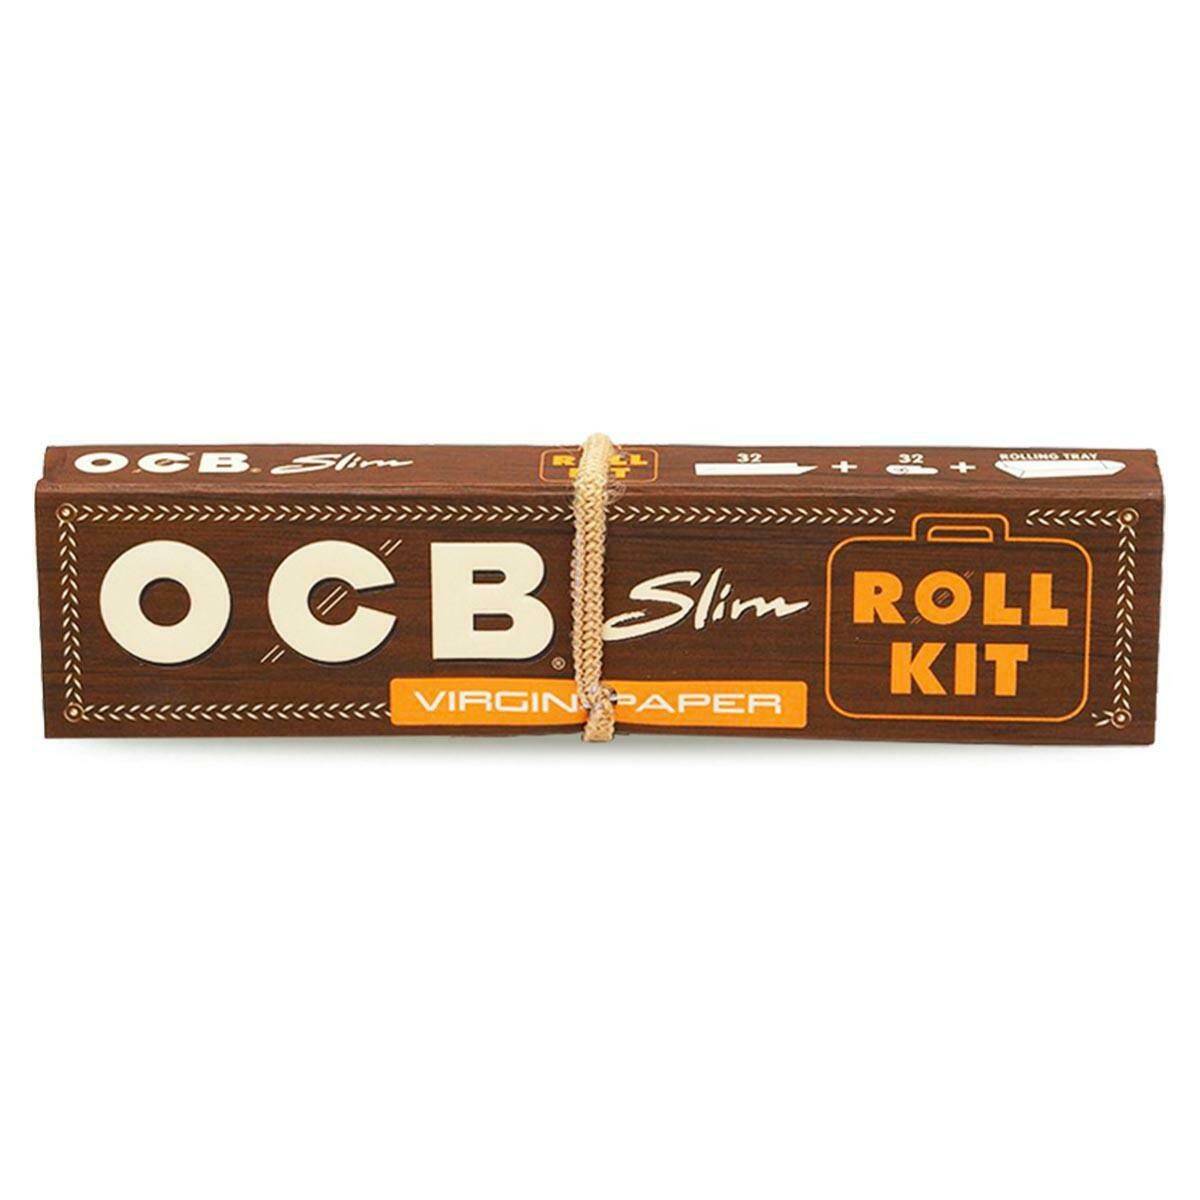 Bibułki OCB Virgin Slim Roll Kit + Filtry (Zdjęcie 1)